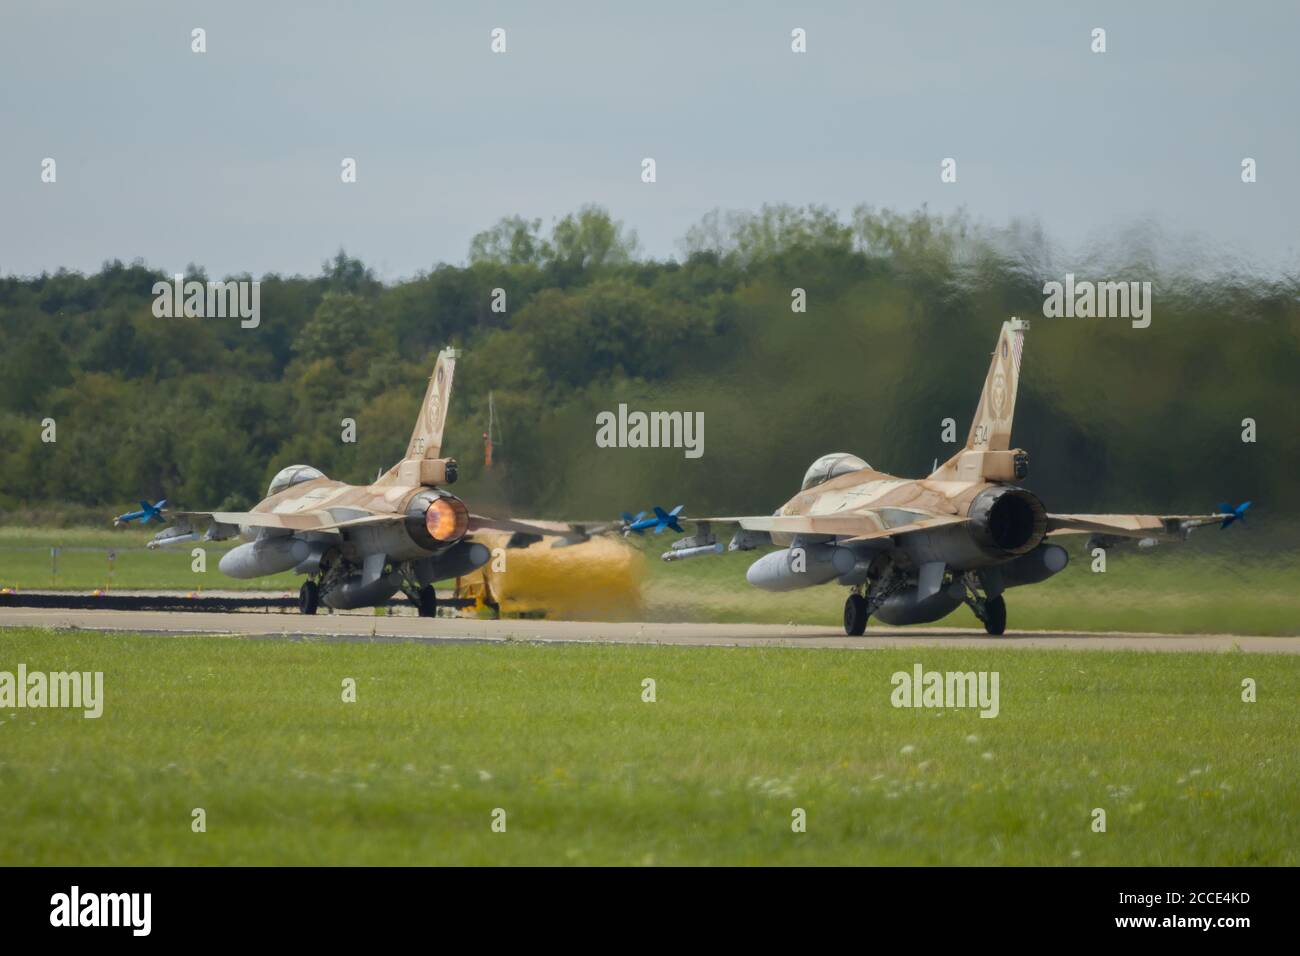 Nörvenich Allemagne août 20 2020: L'armée de l'air israélienne F-16 Barak prend son départ de la base aérienne de Nörvenich. Banque D'Images